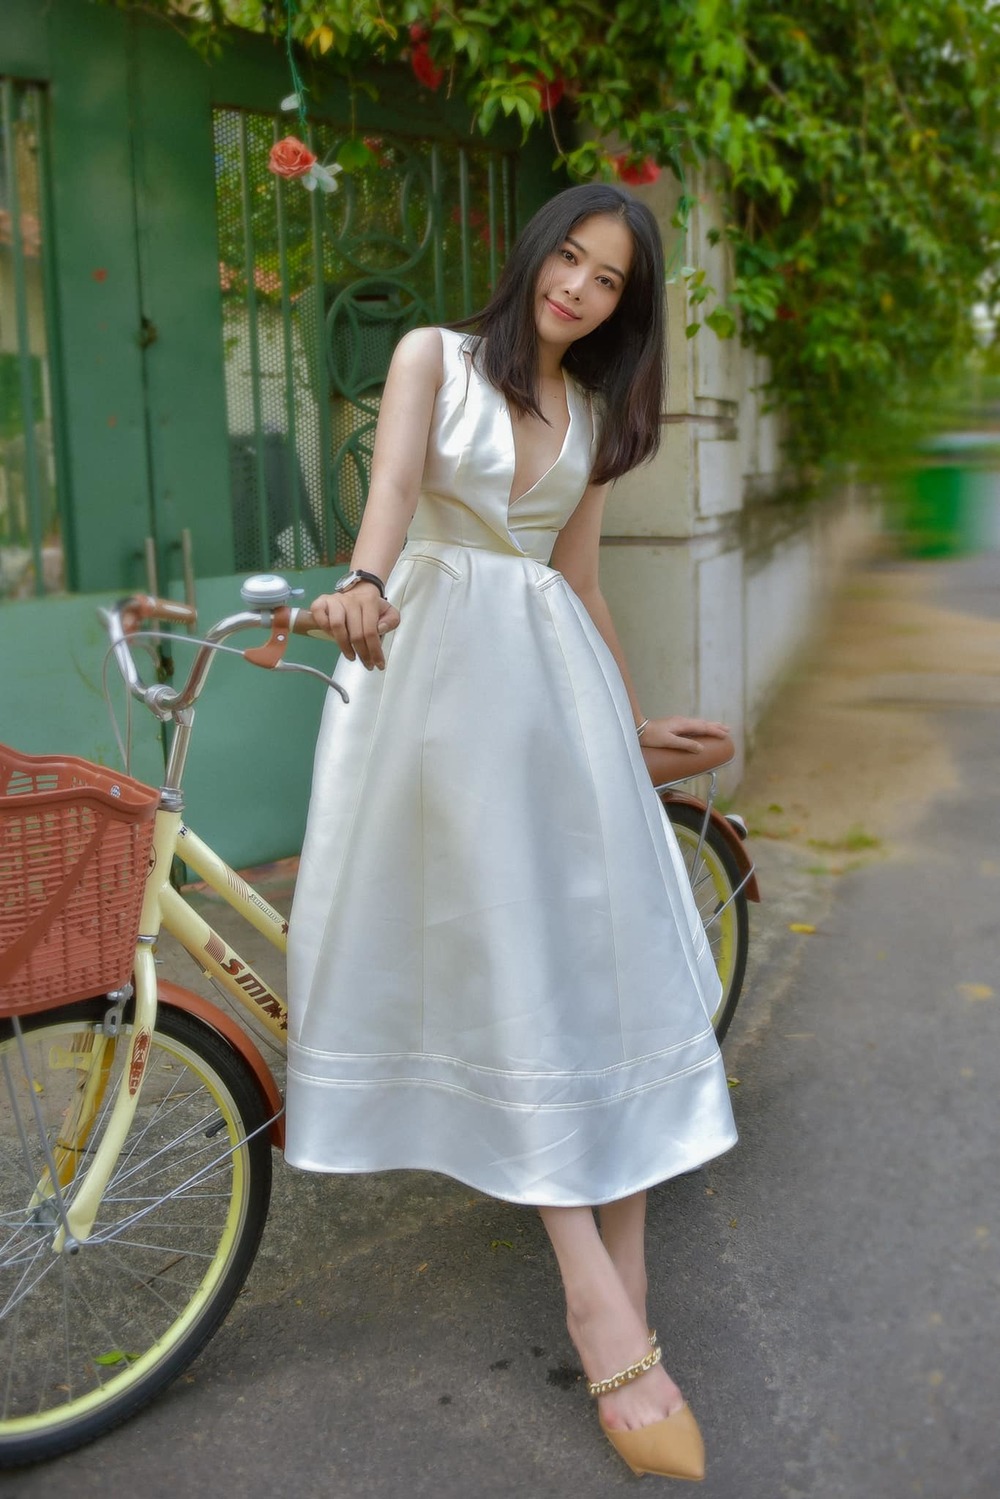  
Cô nàng hóa nhẹ nhàng, mong manh với các mẫu đầm trắng khi ra đường. (Ảnh: FB Nguyễn Lệ Nam Em)